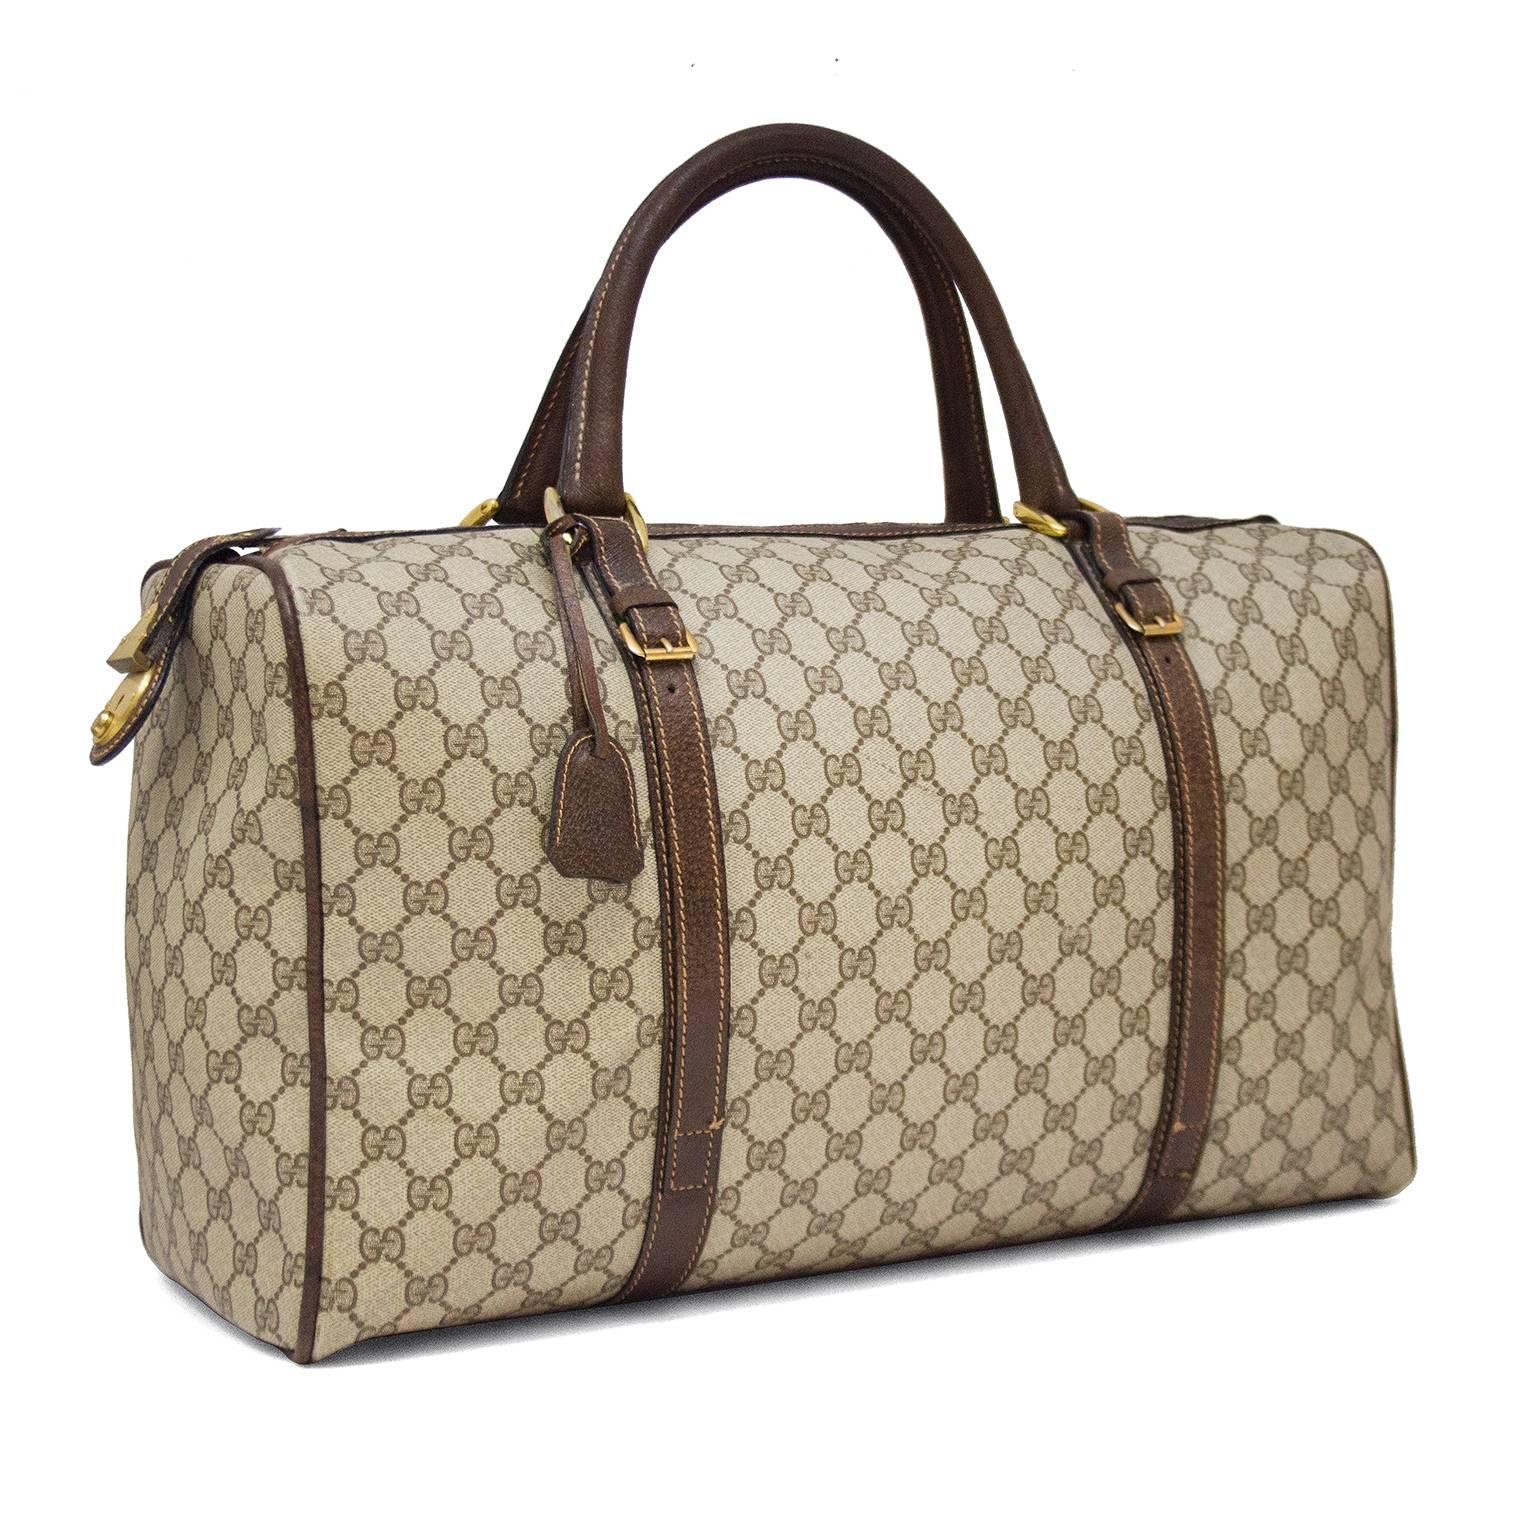 Die perfekte Fluchttasche! 1970er Gucci Monogramm Vinyl Weekender Duffle Bag mit braunem Lederbesatz und goldfarbener Hardware. Die Reißverschlusslasche rastet in ein großes goldenes Schloss an der Seite der Tasche ein. Sehr sauberer Innenraum ohne